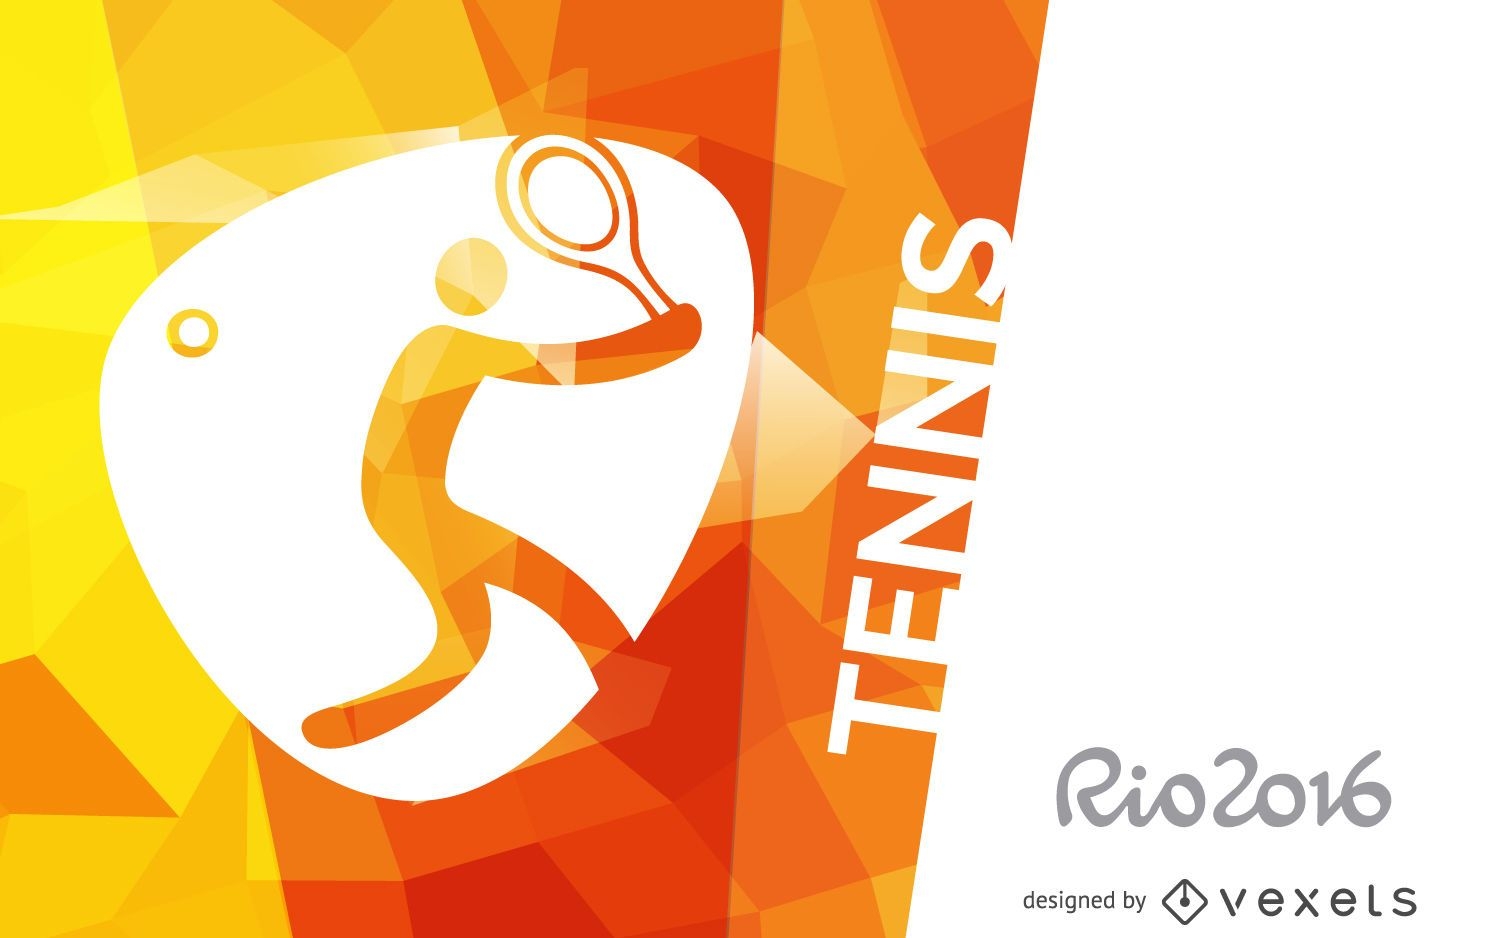 Rio 2016 tennis poster